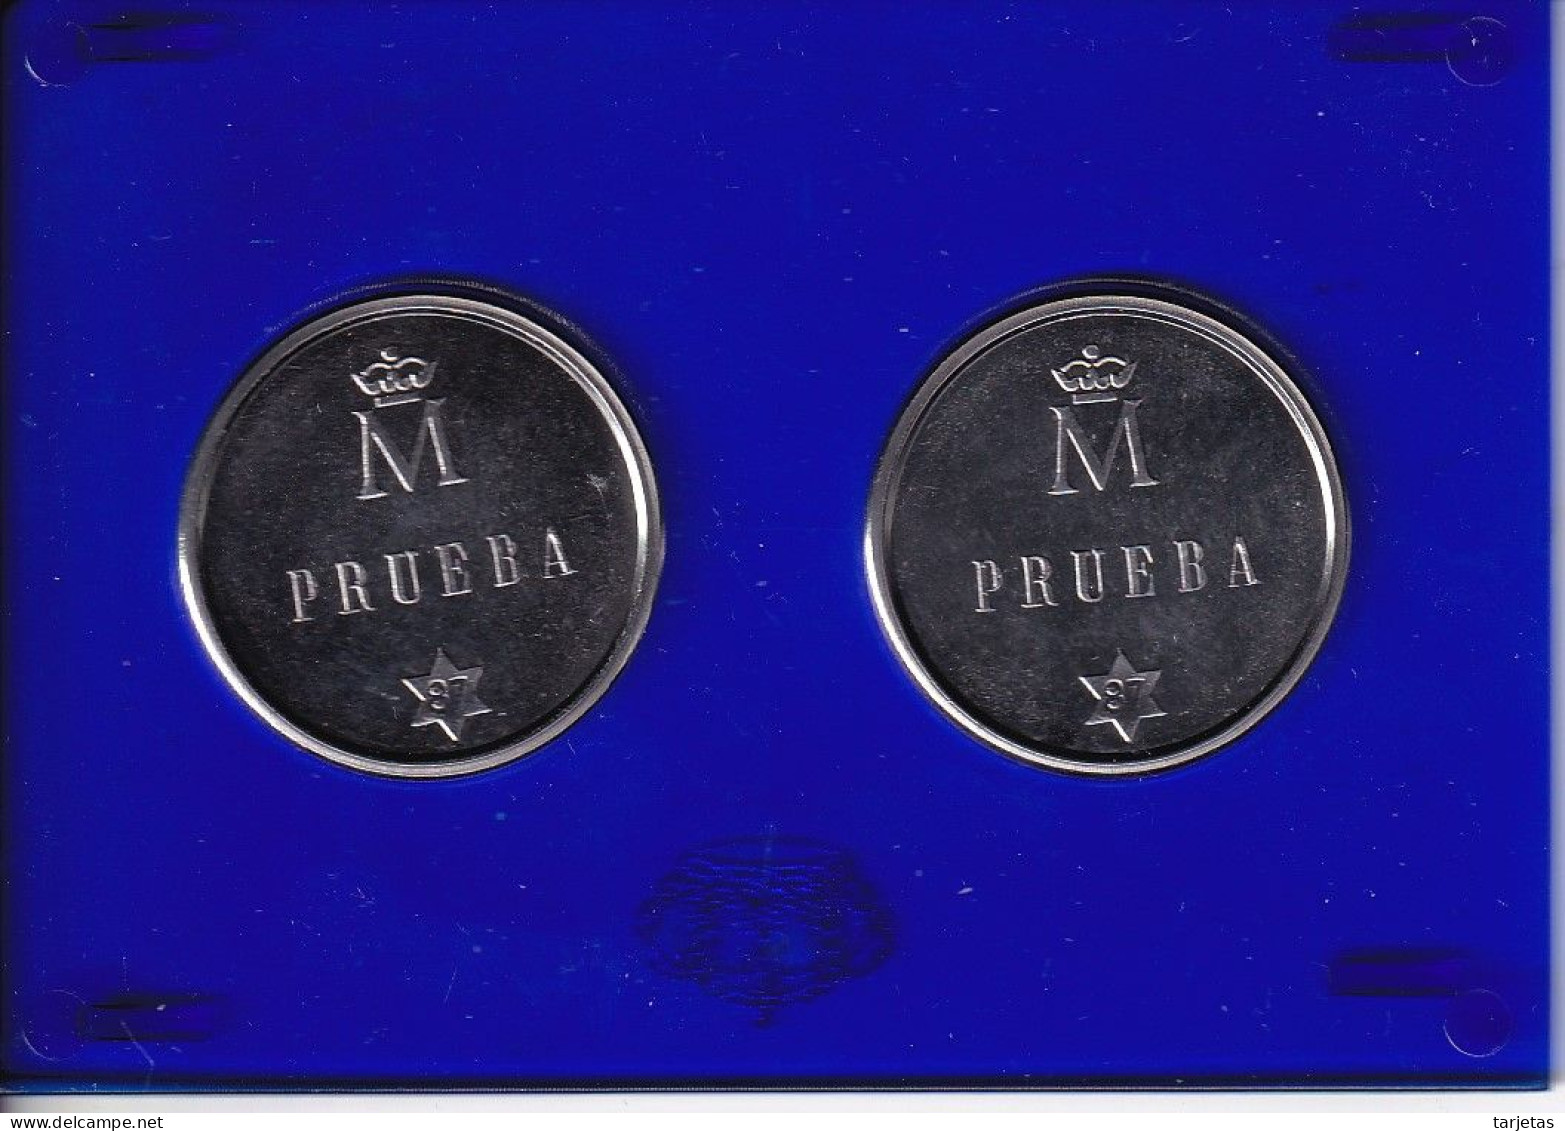 MONEDAS DE PRUEBA DE ESPAÑA DE 500 PESETAS DEL AÑO 1987 EN ESTUCHE ORIGINAL (COIN) - Ongebruikte Sets & Proefsets